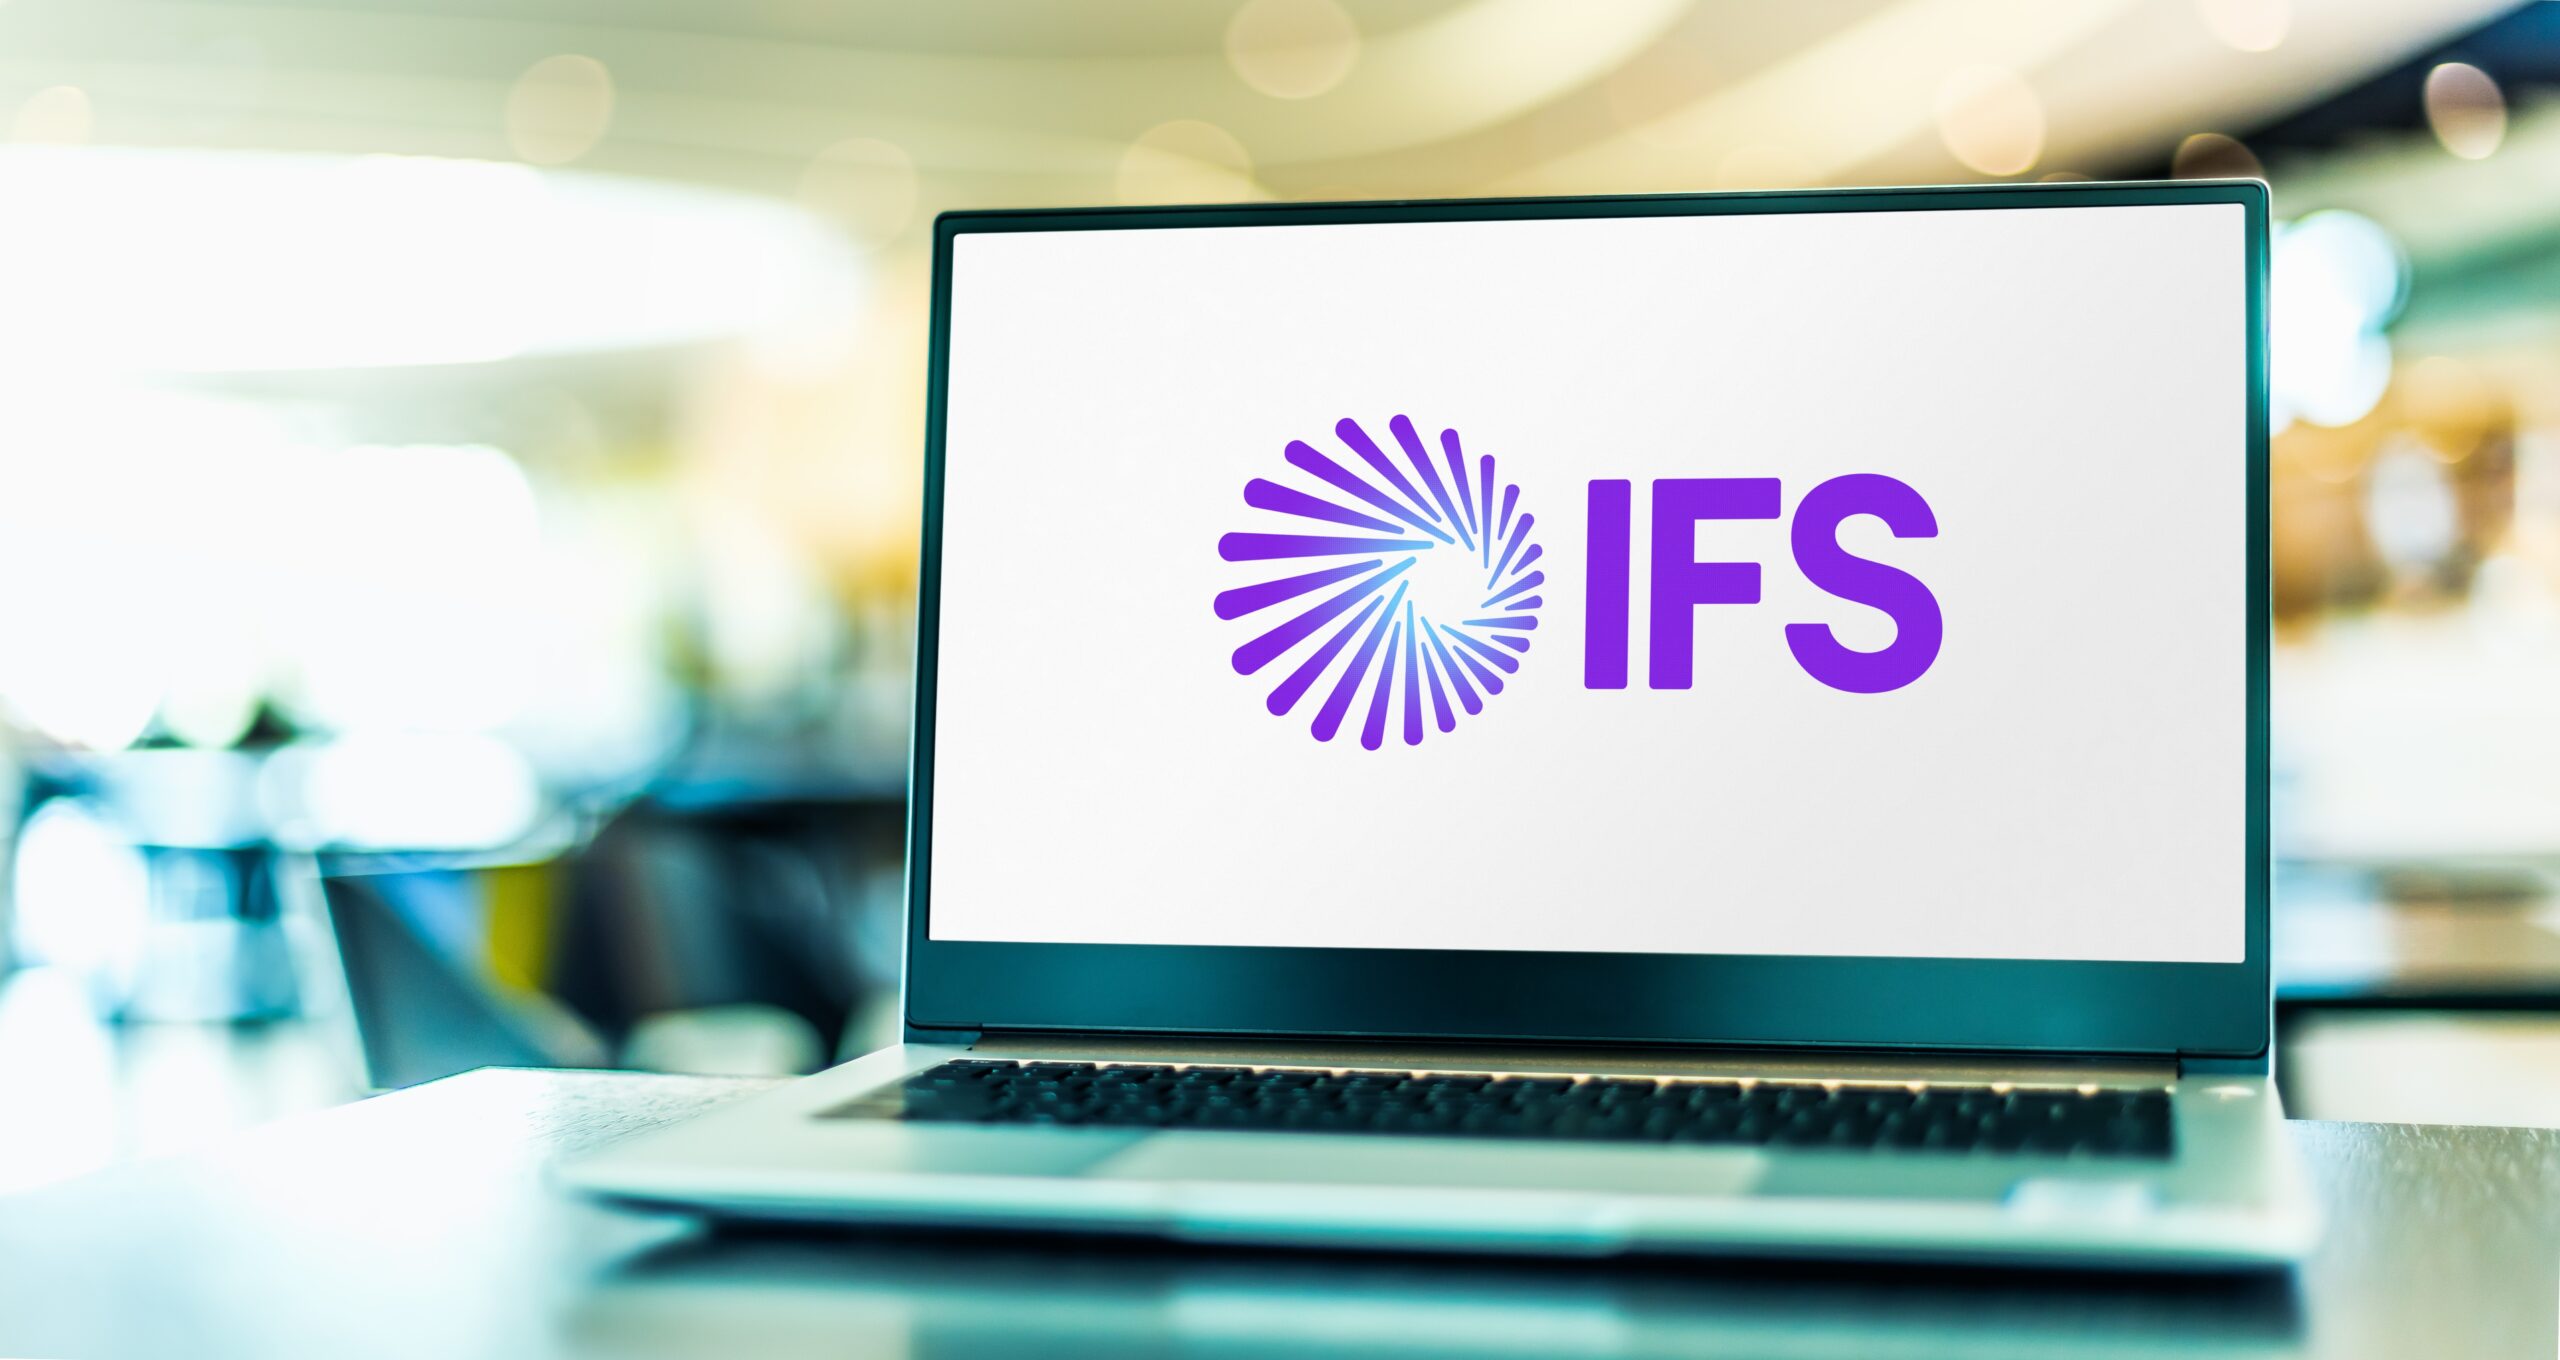 IFS - Interior Flooring Services